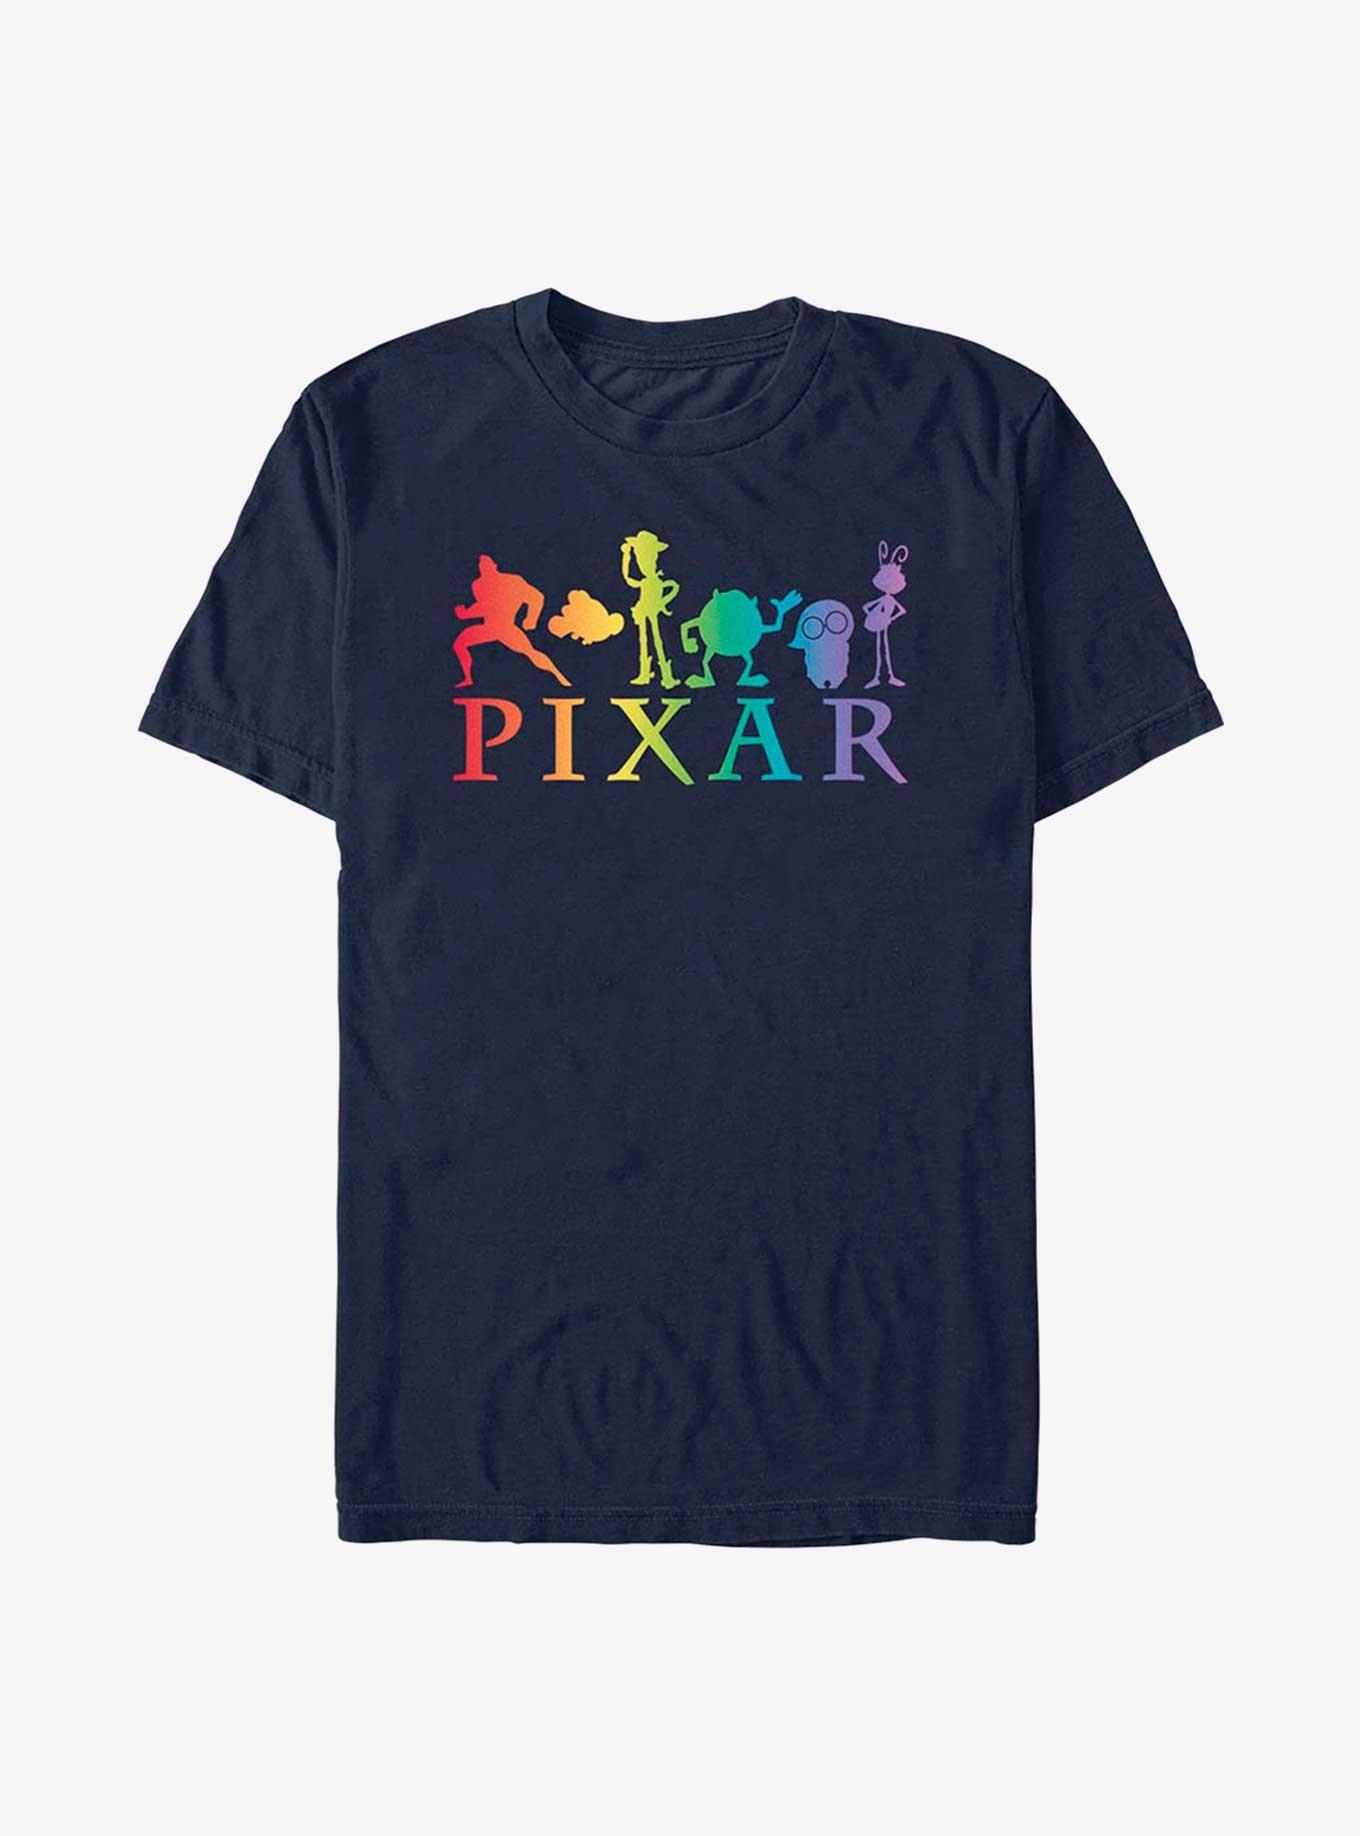 Pixar Lineup Pride T-Shirt